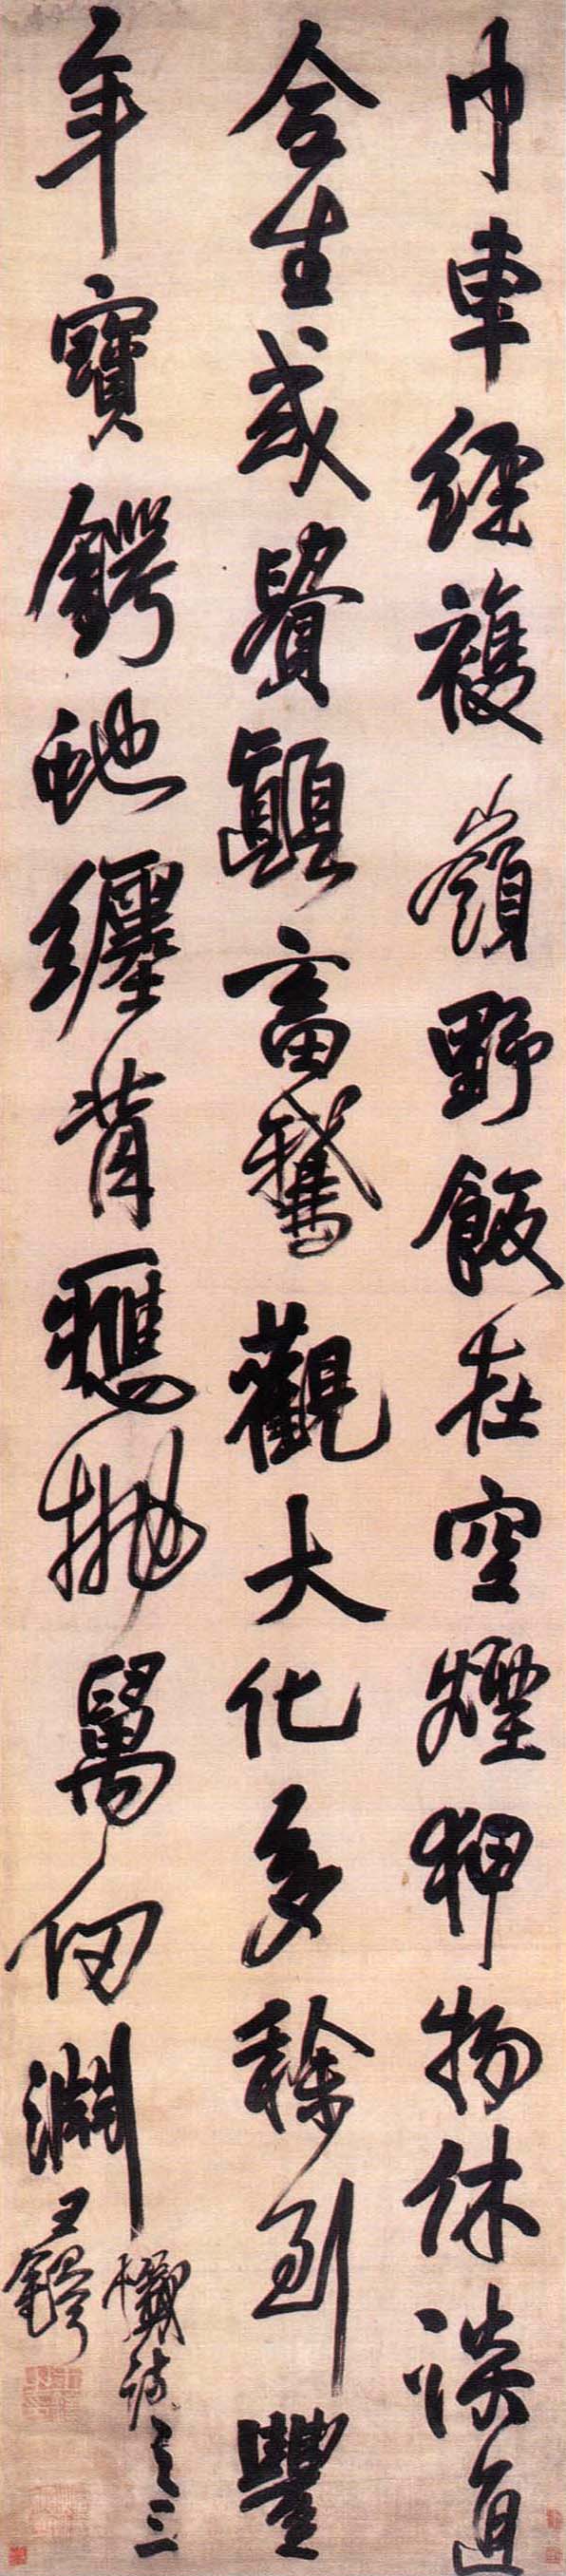 王铎《行书忏诗之三轴》-深圳博物馆藏(图1)